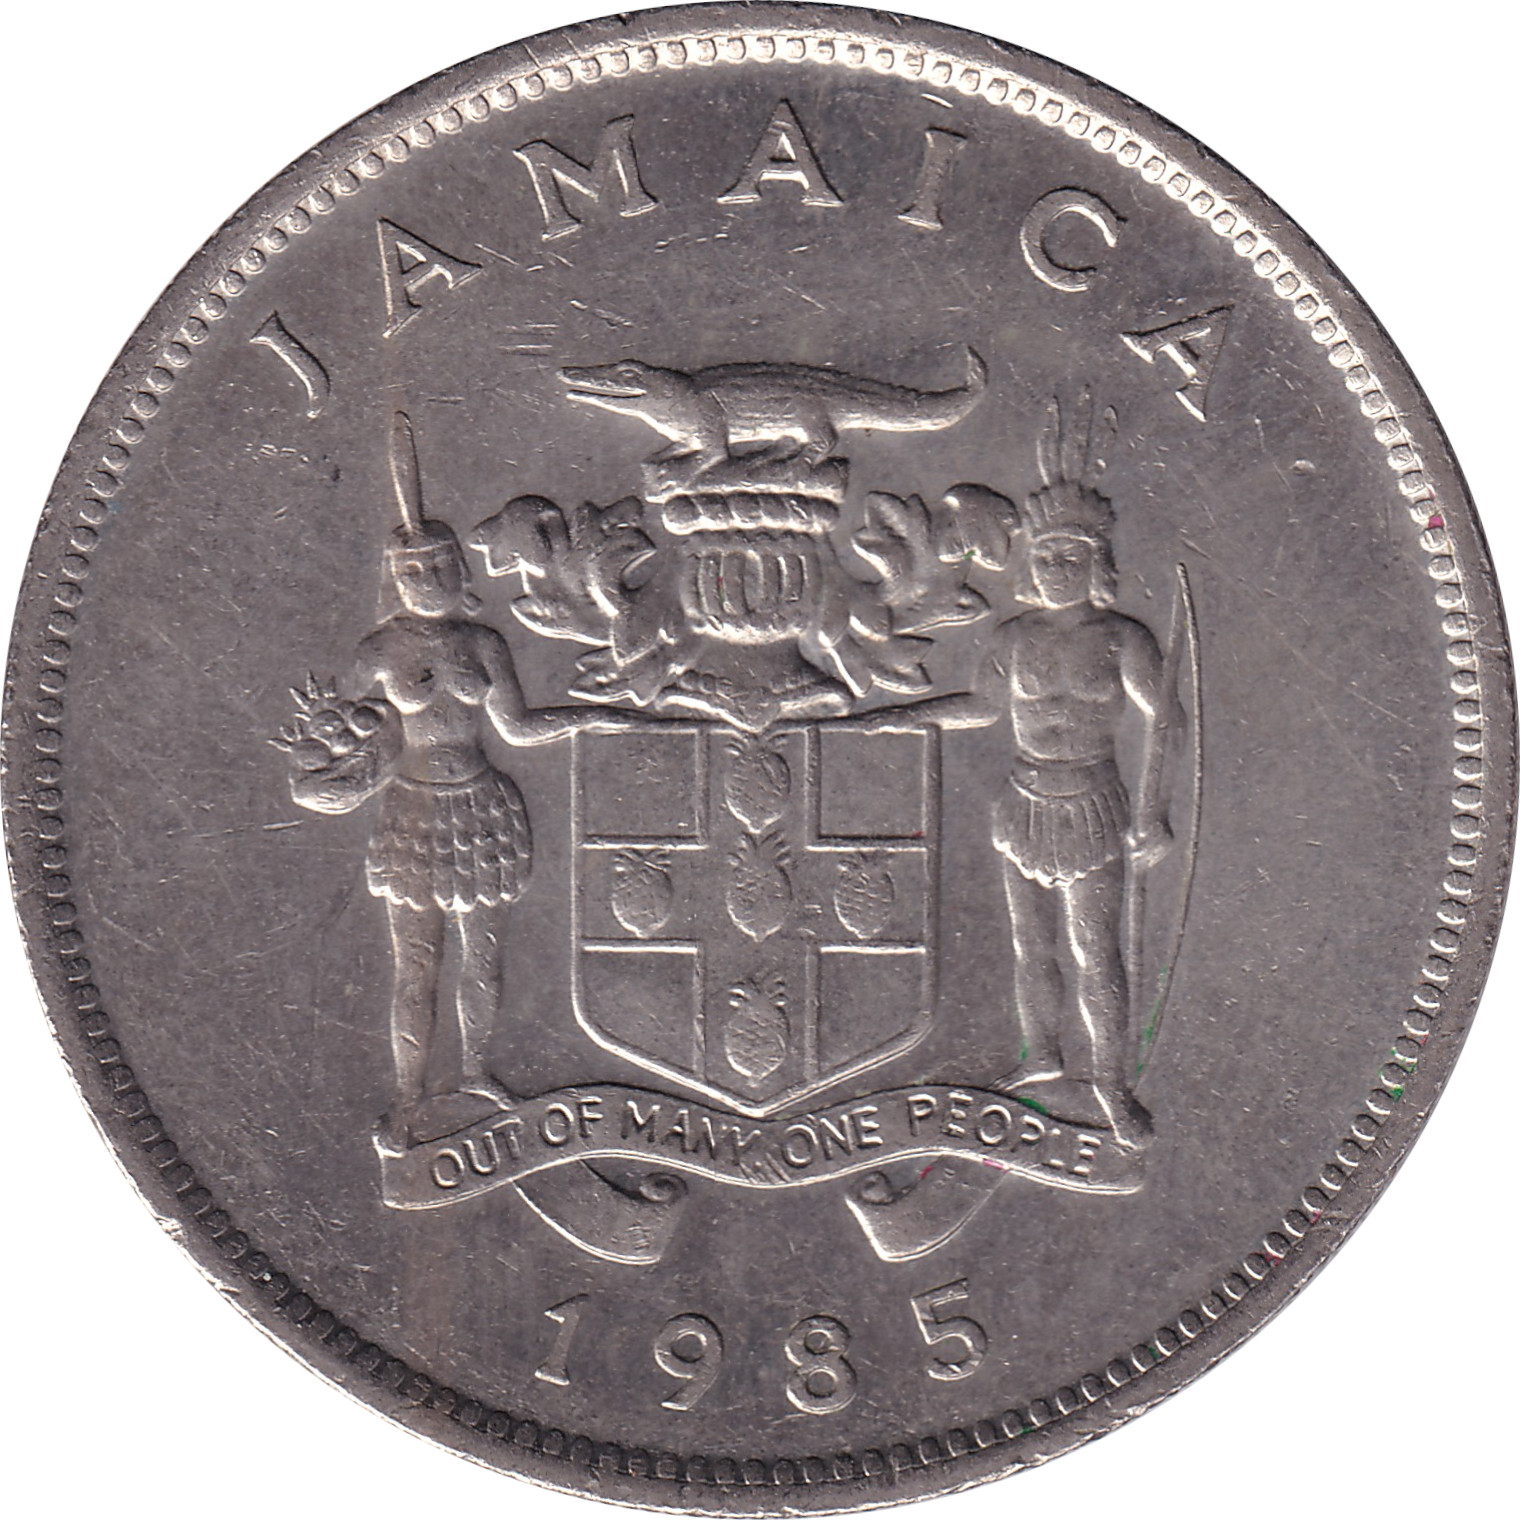 25 cents - Oiseau - Banque de Jamaique